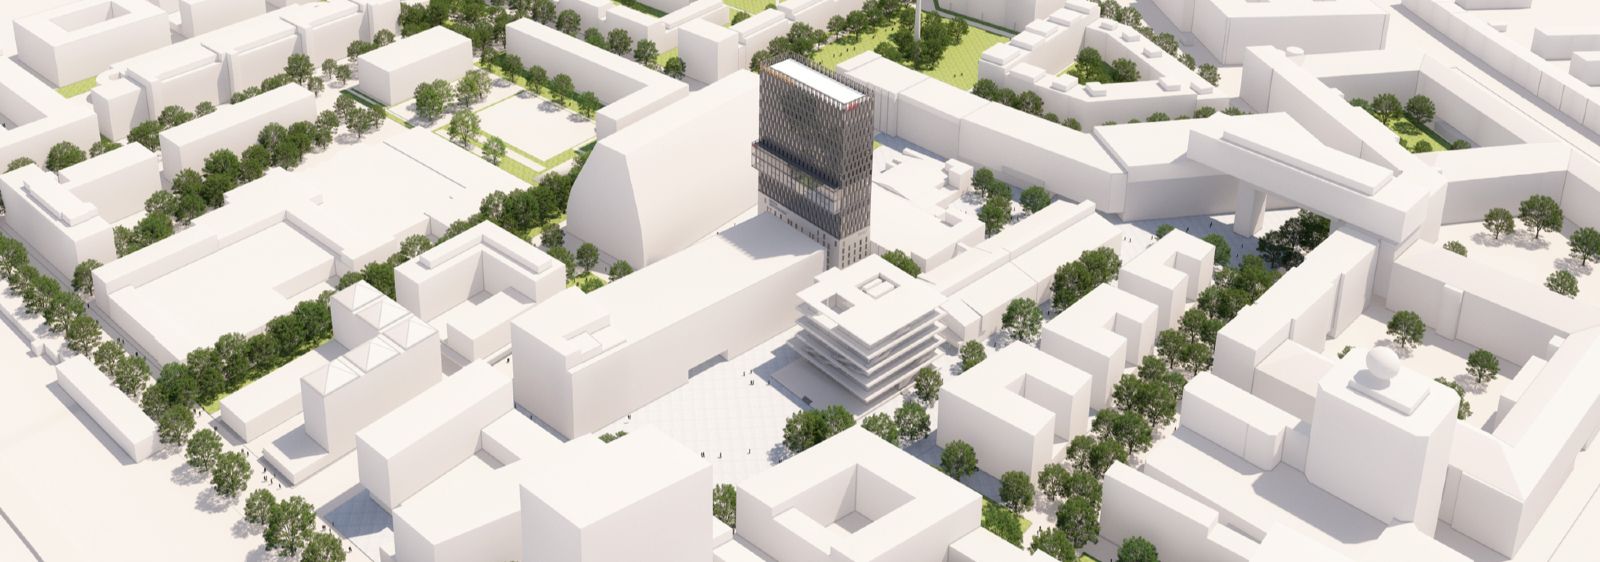 Modell des Münchener Werksviertels, ein neues Quartier zum Leben, Wohnen und Arbeiten. Im Herzen des Quartiers befindet sich das geplante neue Münchener Konzerthaus.